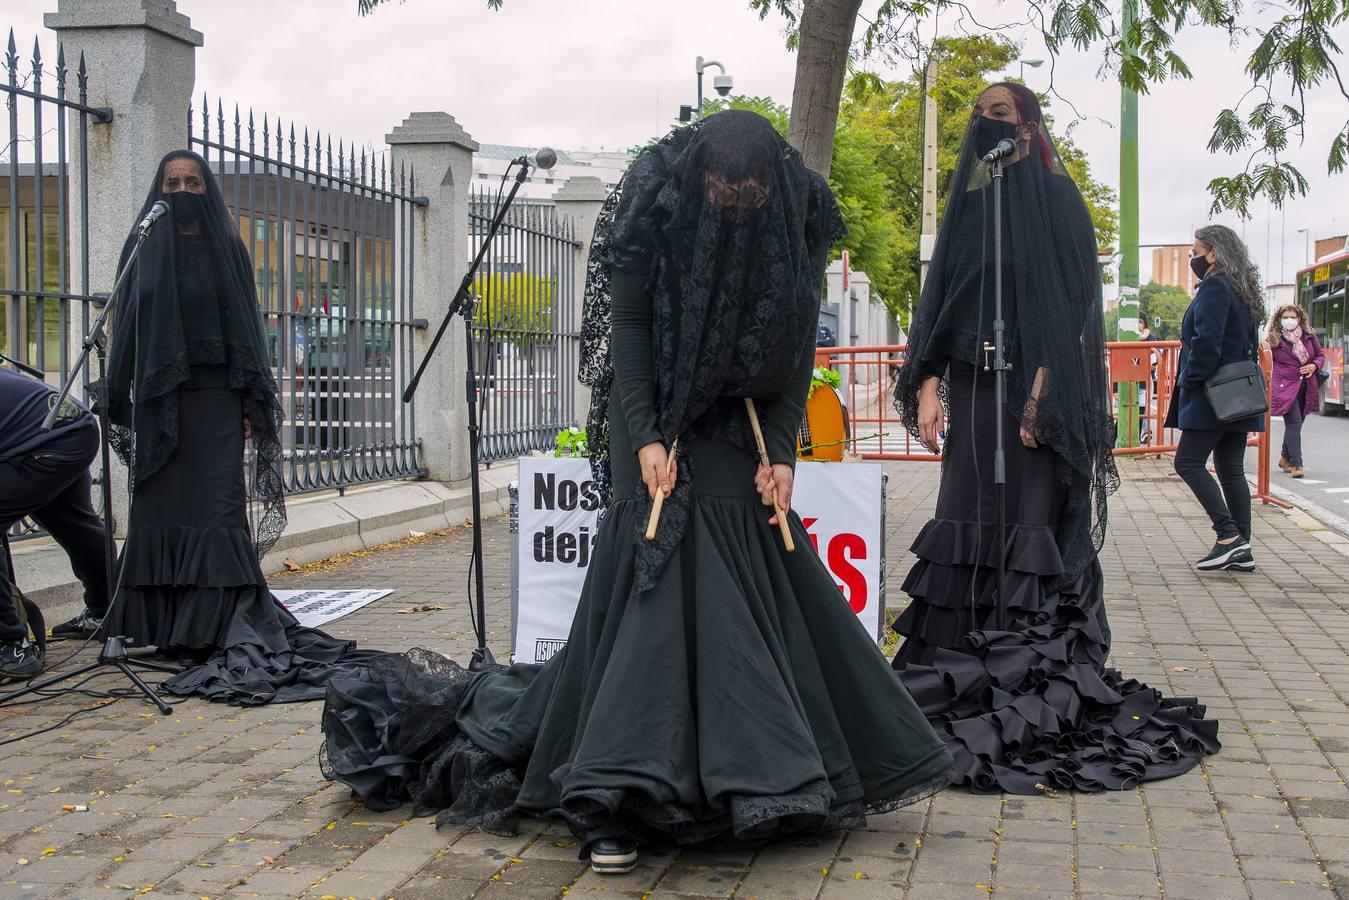 En imágenes, la protesta de los trabajadores del sector cultural en Sevilla